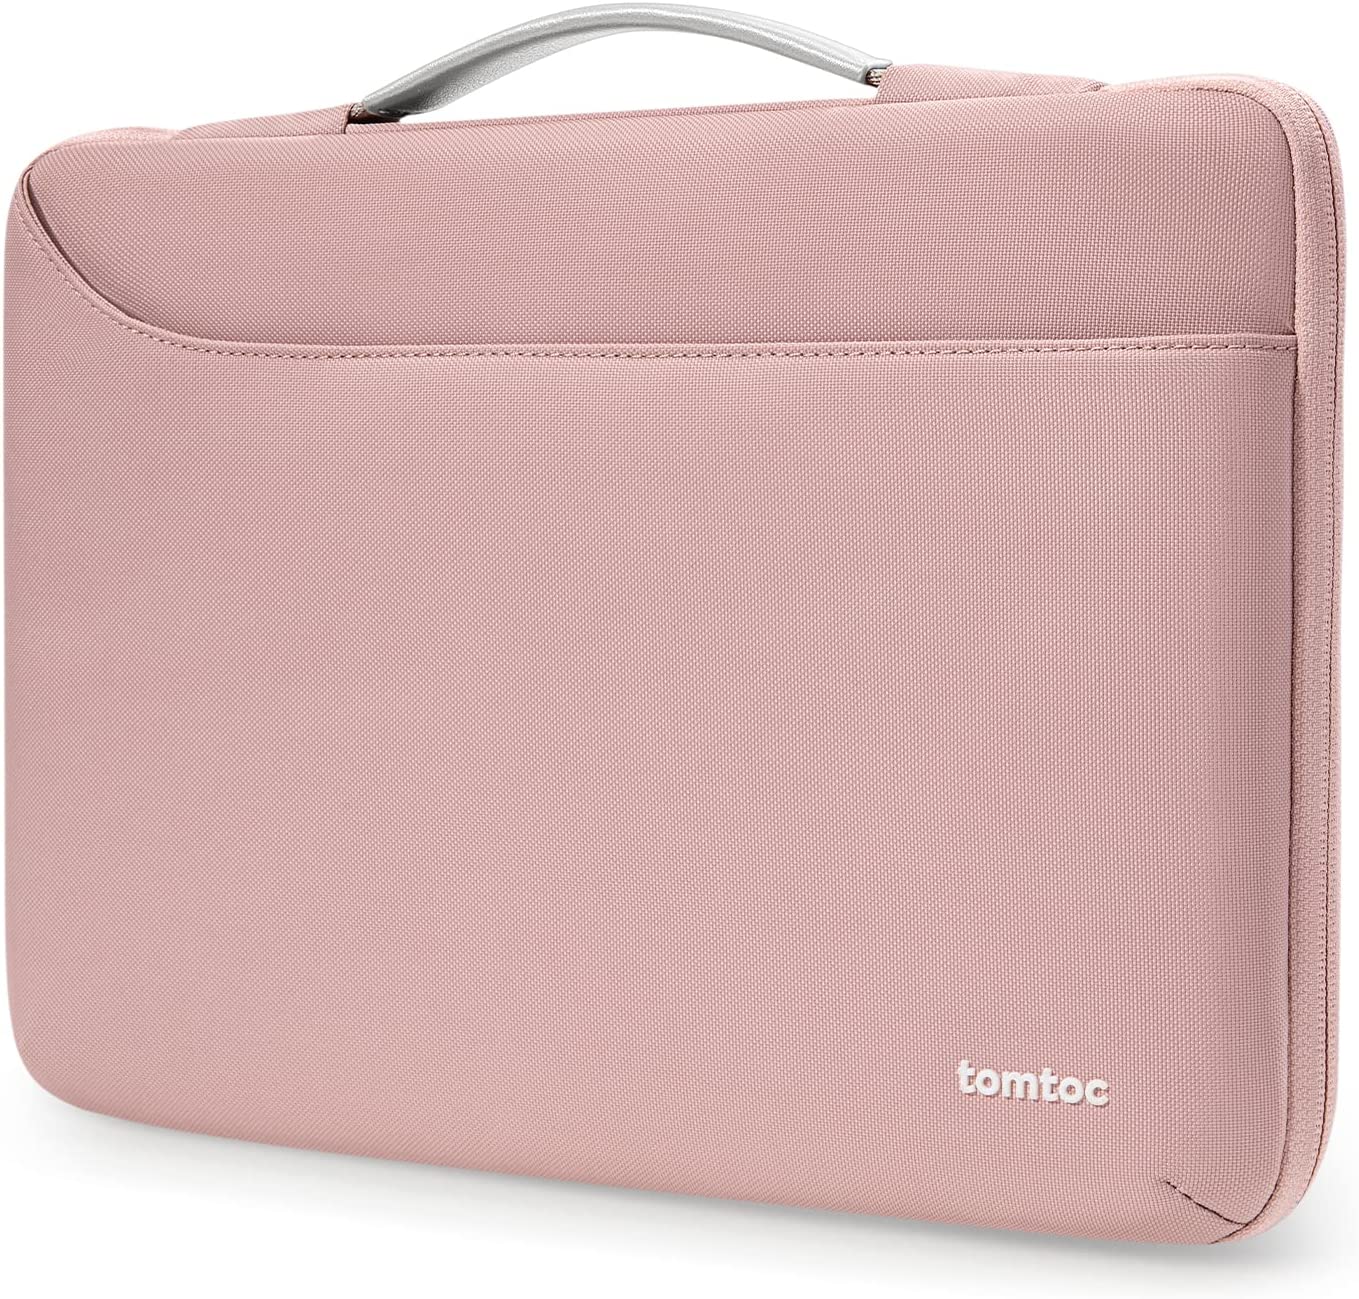 Tomtoc Defender-A22 Laptop Handbag 14 inch - Pink